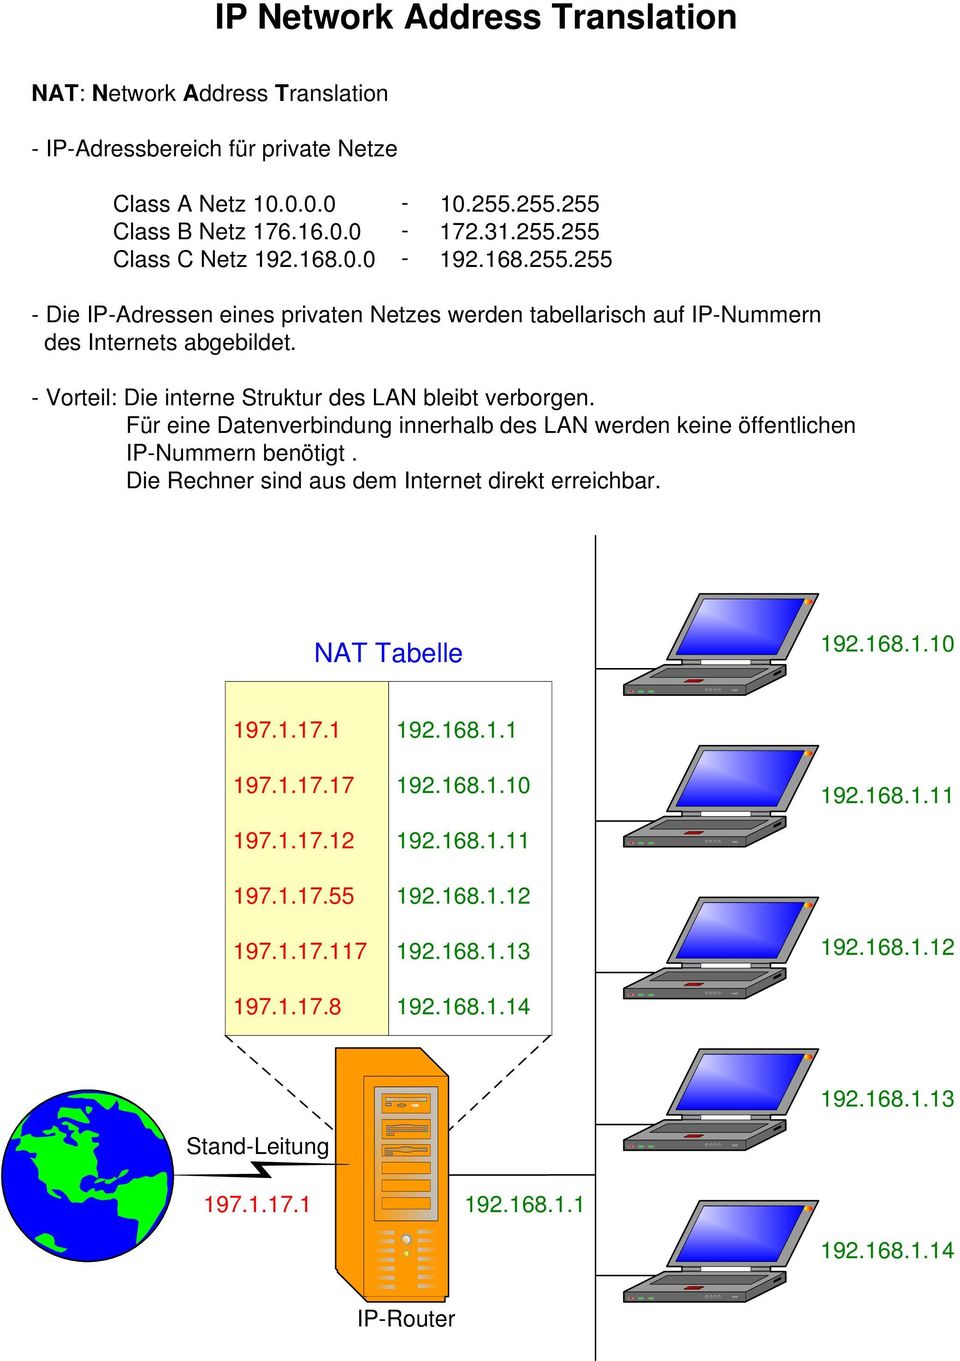 - Vorteil: Die interne Struktur des LAN bleibt verborgen. Für eine Datenverbindung innerhalb des LAN werden keine öffentlichen IP-Nummern benötigt.